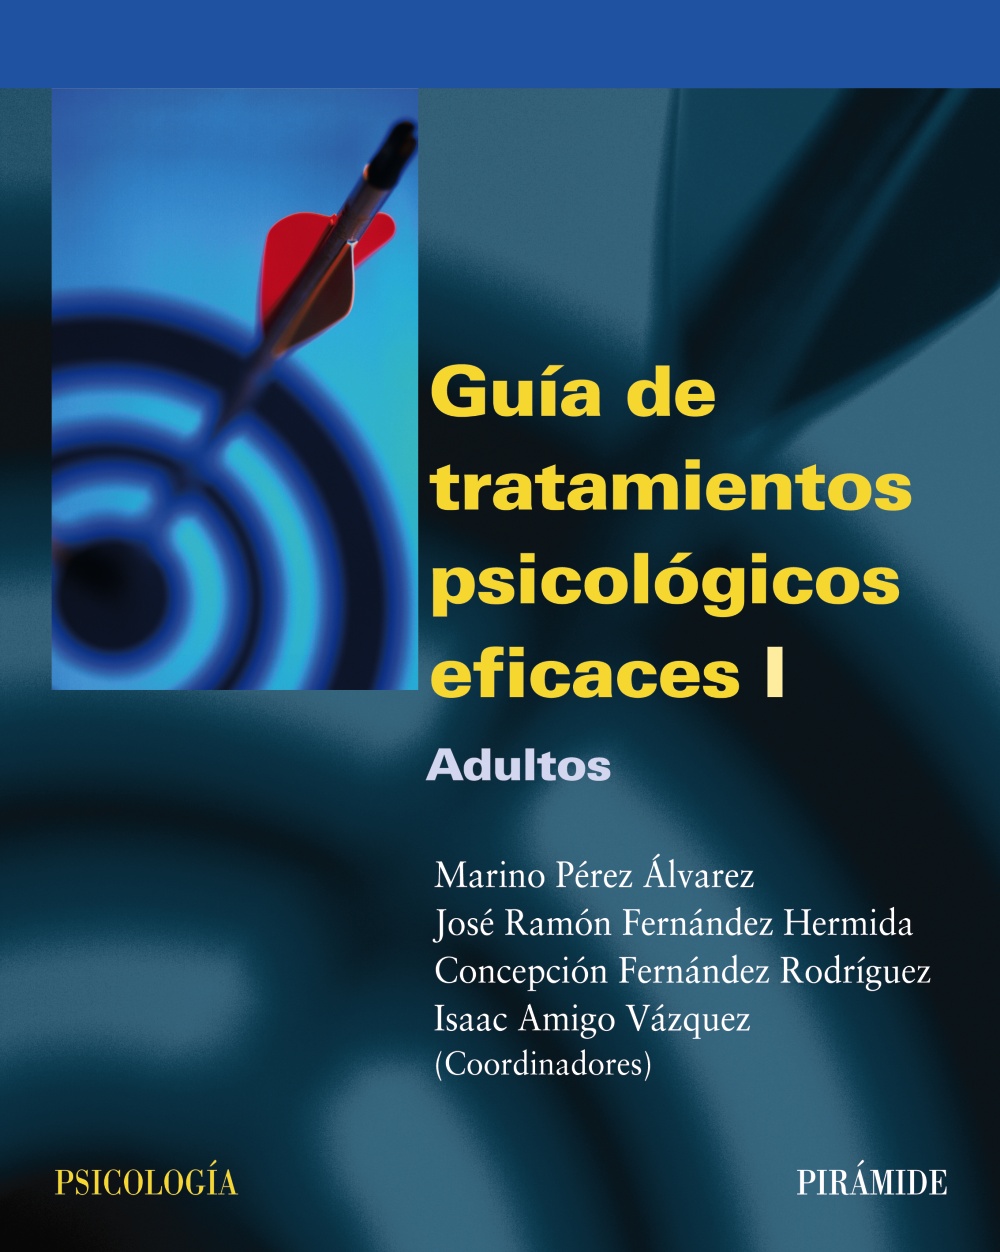 Guia De Tratamientos Psicologicos Eficaces T I Adultos Vvaa 2590